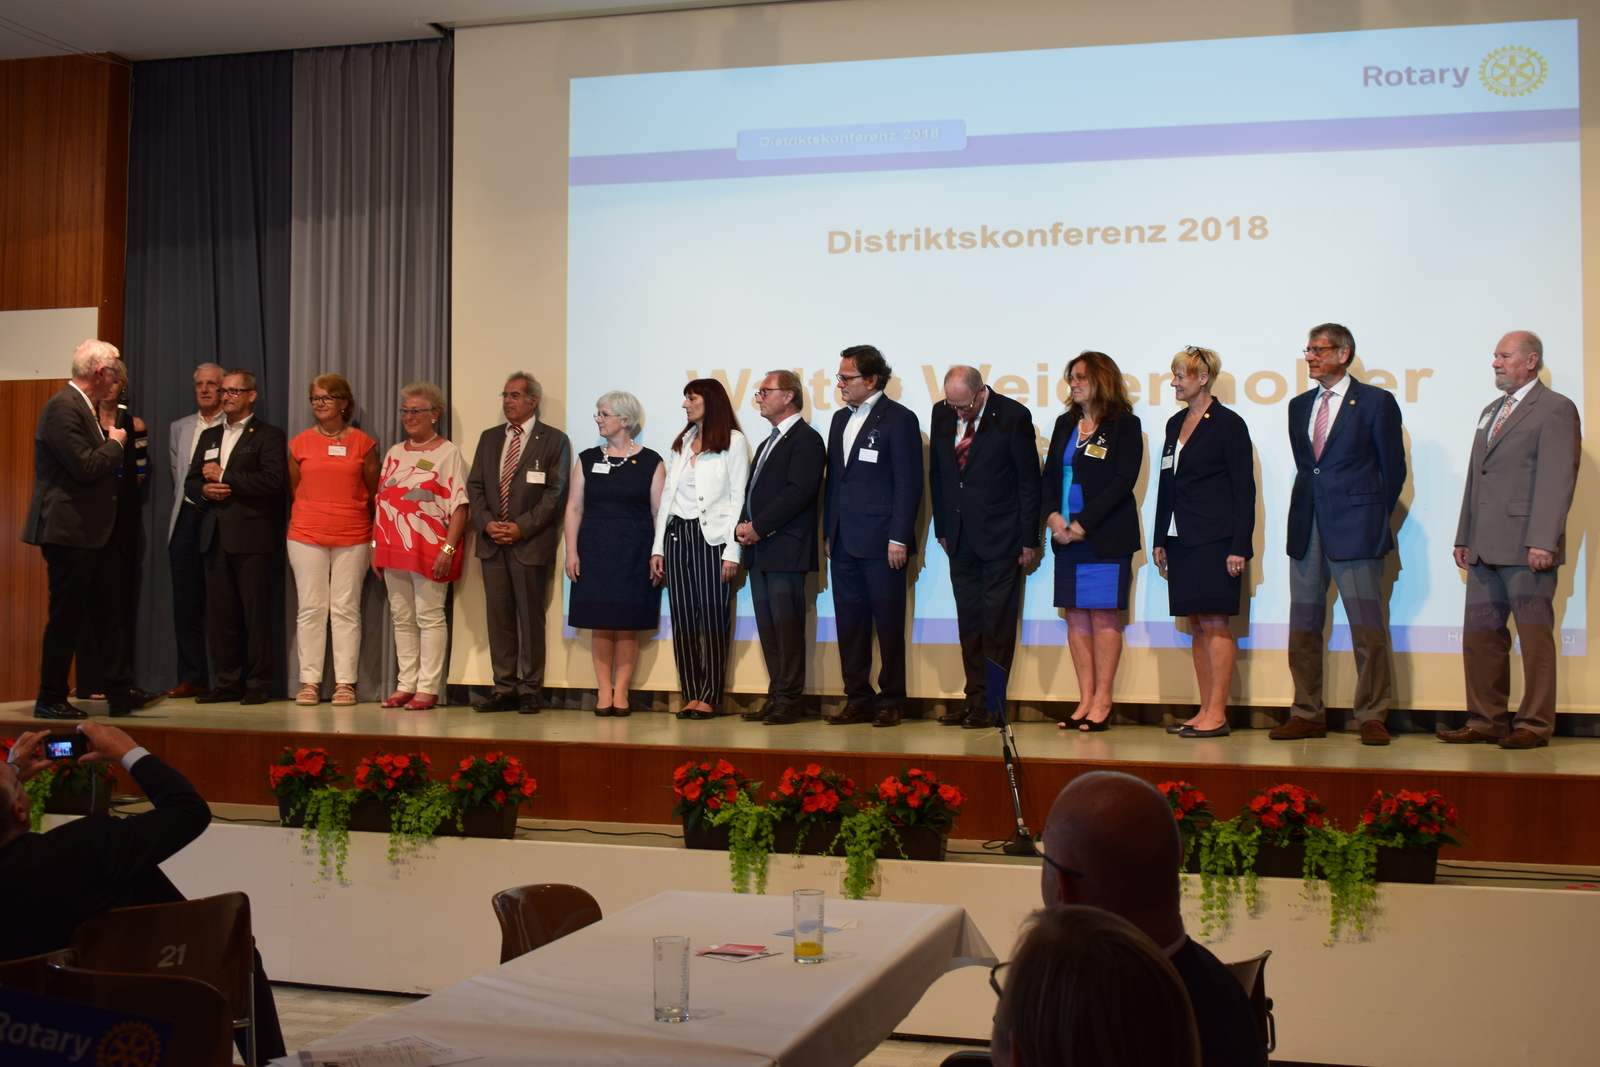 DisKo, Distriktkonferenz, Altenhof am Hausruck, Altenhof, Assista, D1920, Governor, Walter Weidenholzer, Team